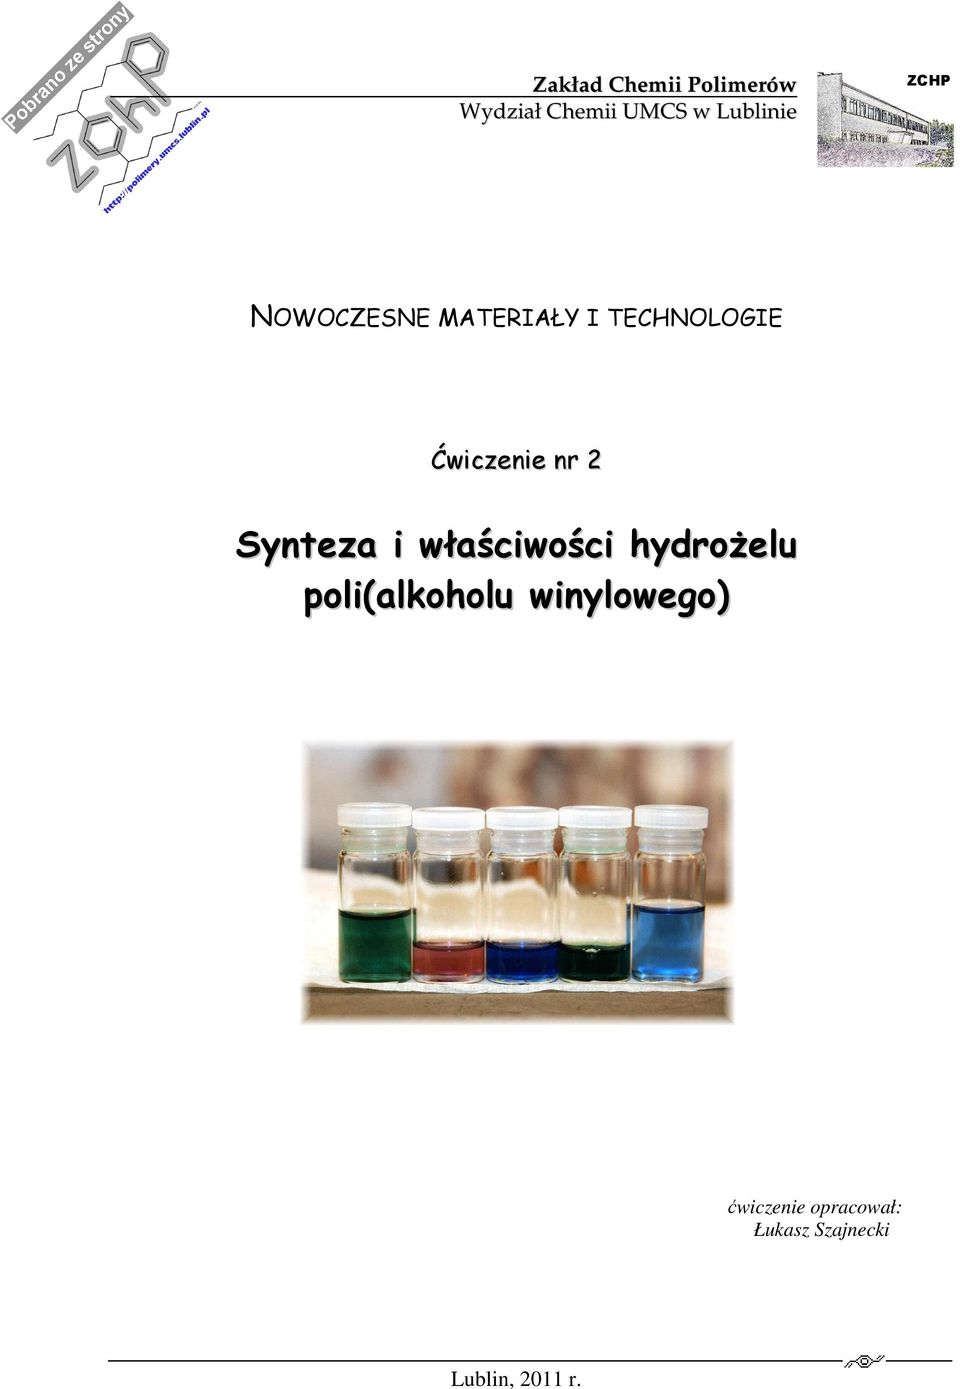 r 2 Syteza i właściwości hydrożelu poli(alkoholu